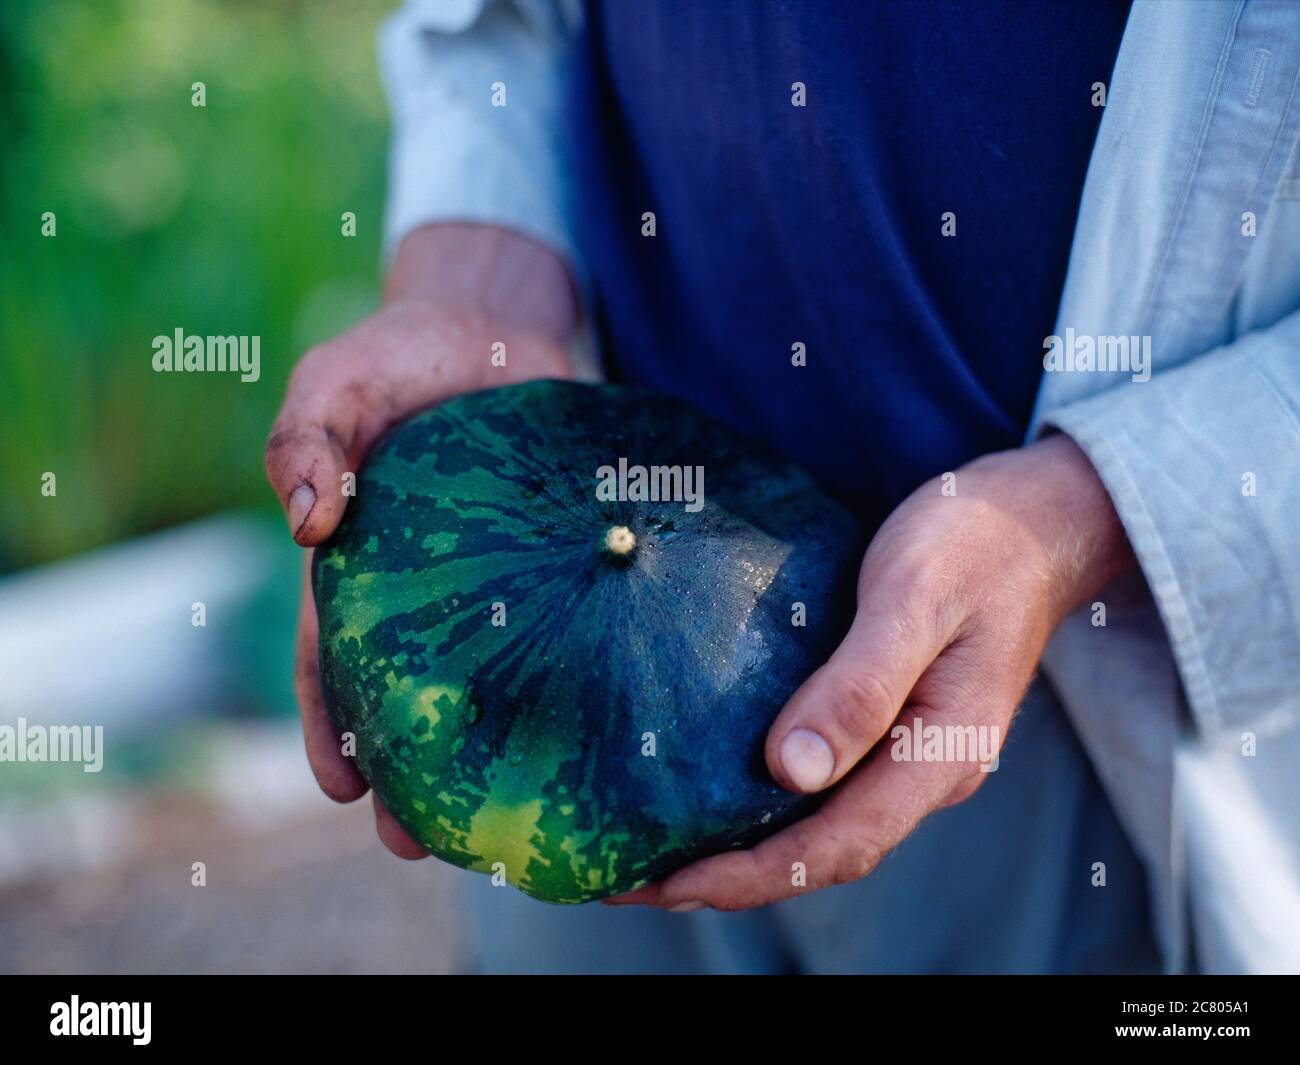 Green gem squash held in gardeners hands Stock Photo